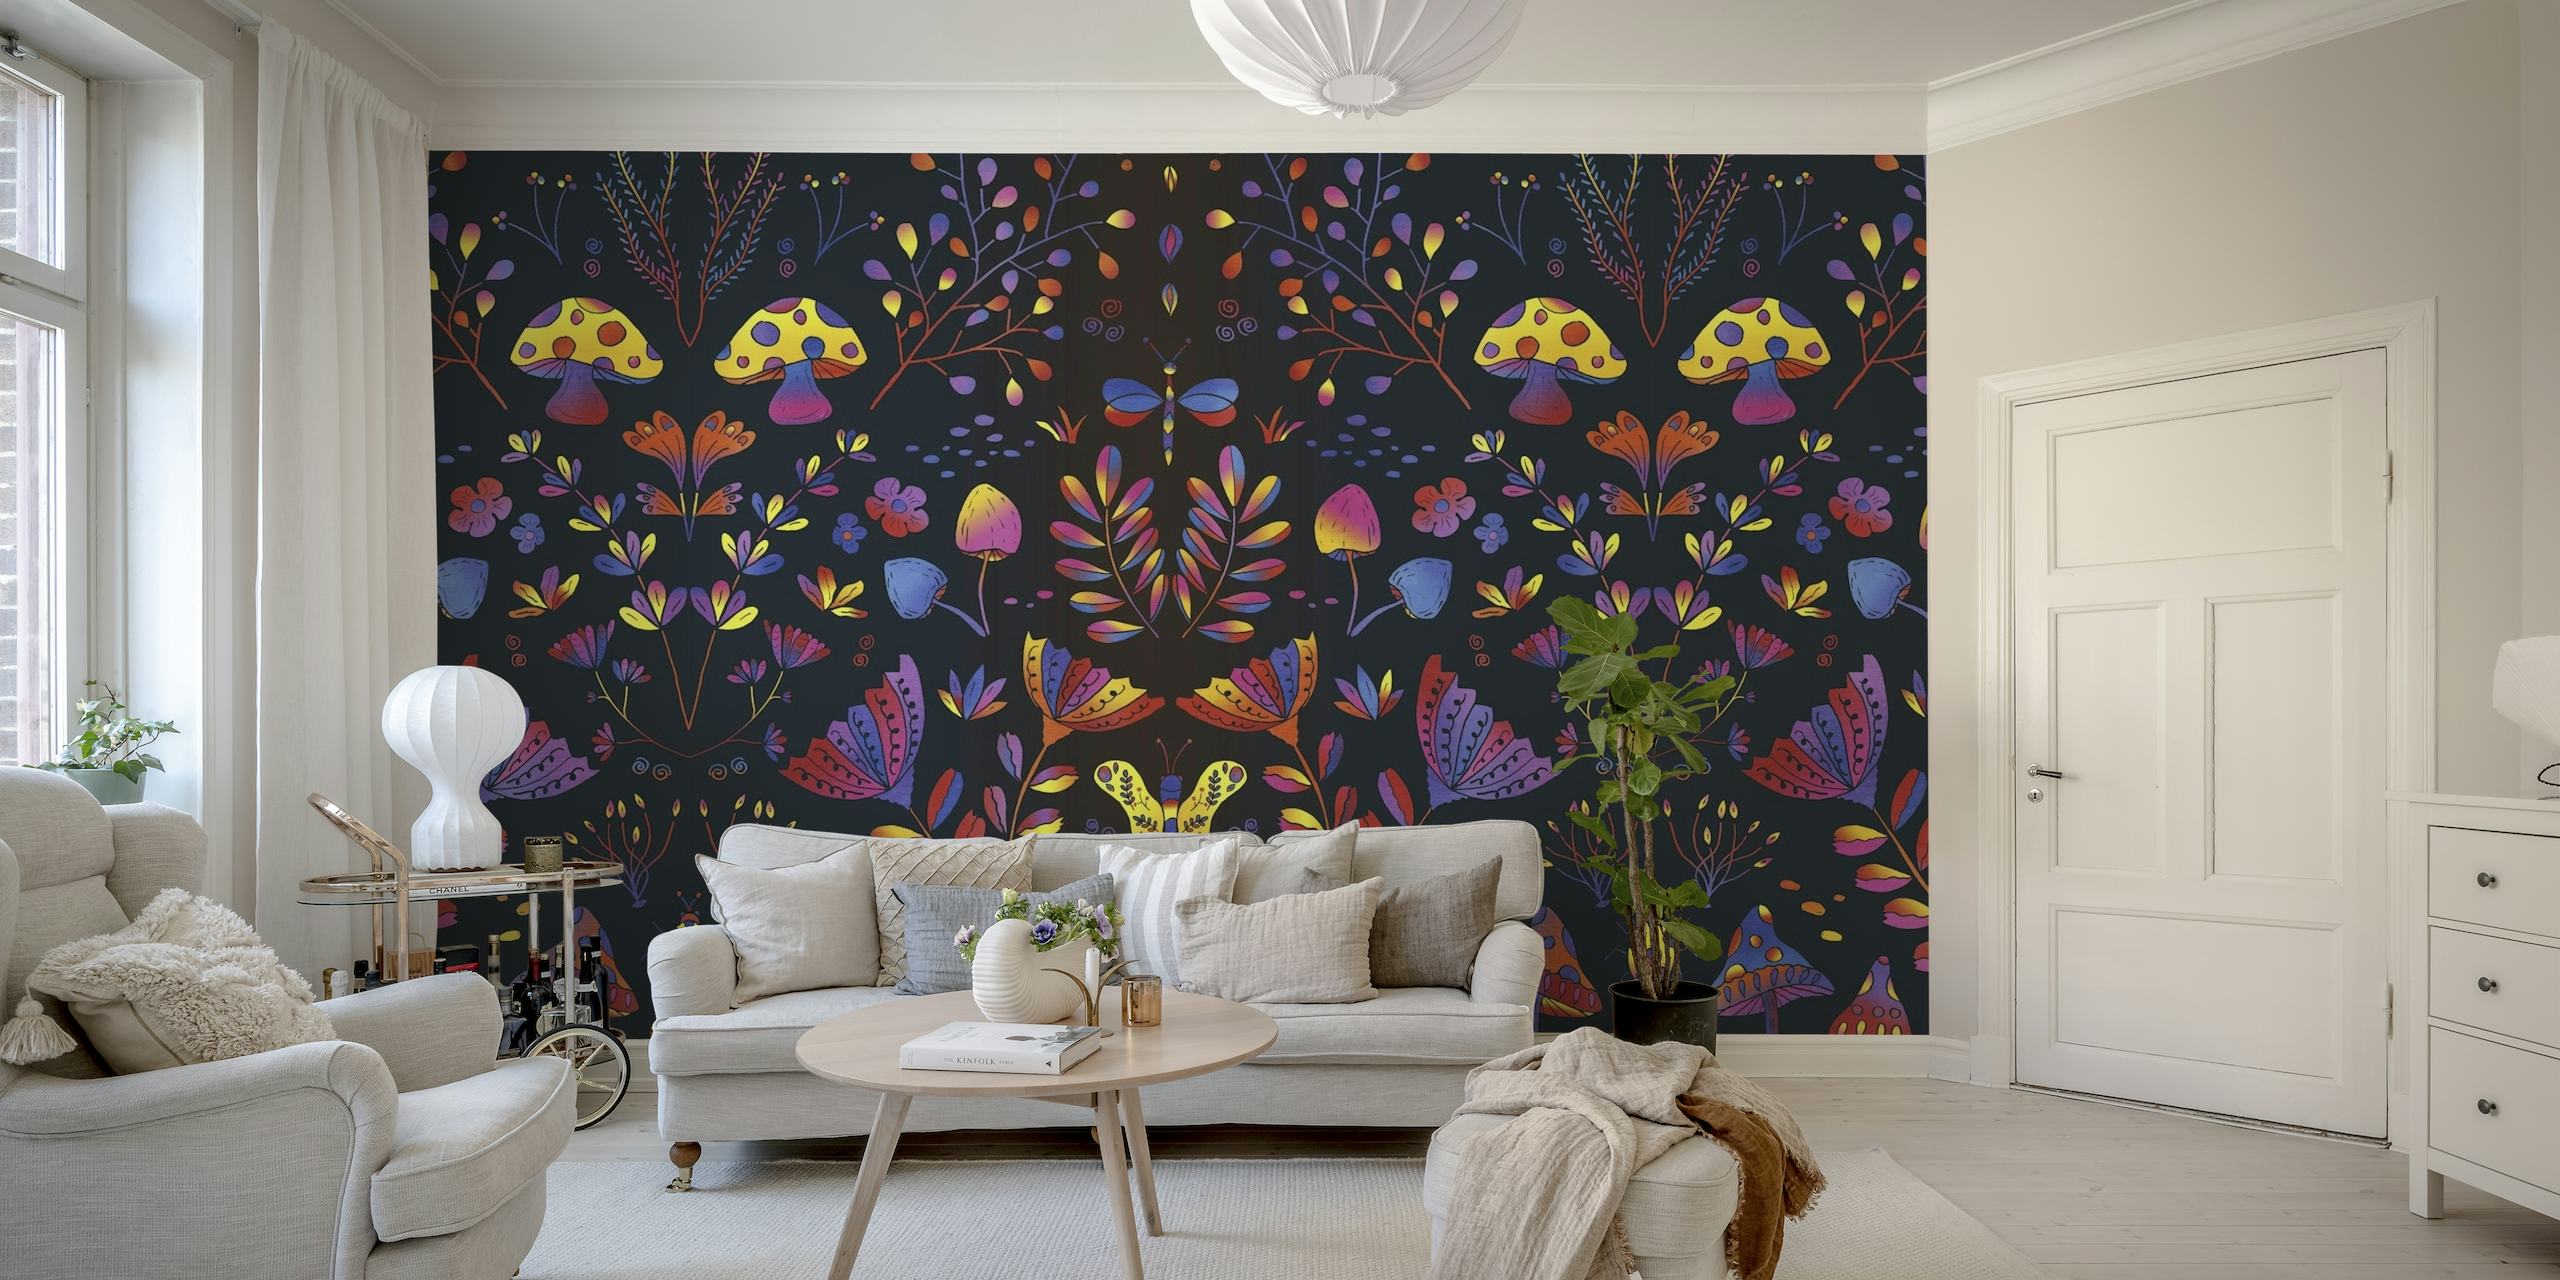 Whimsical Garden wallpaper